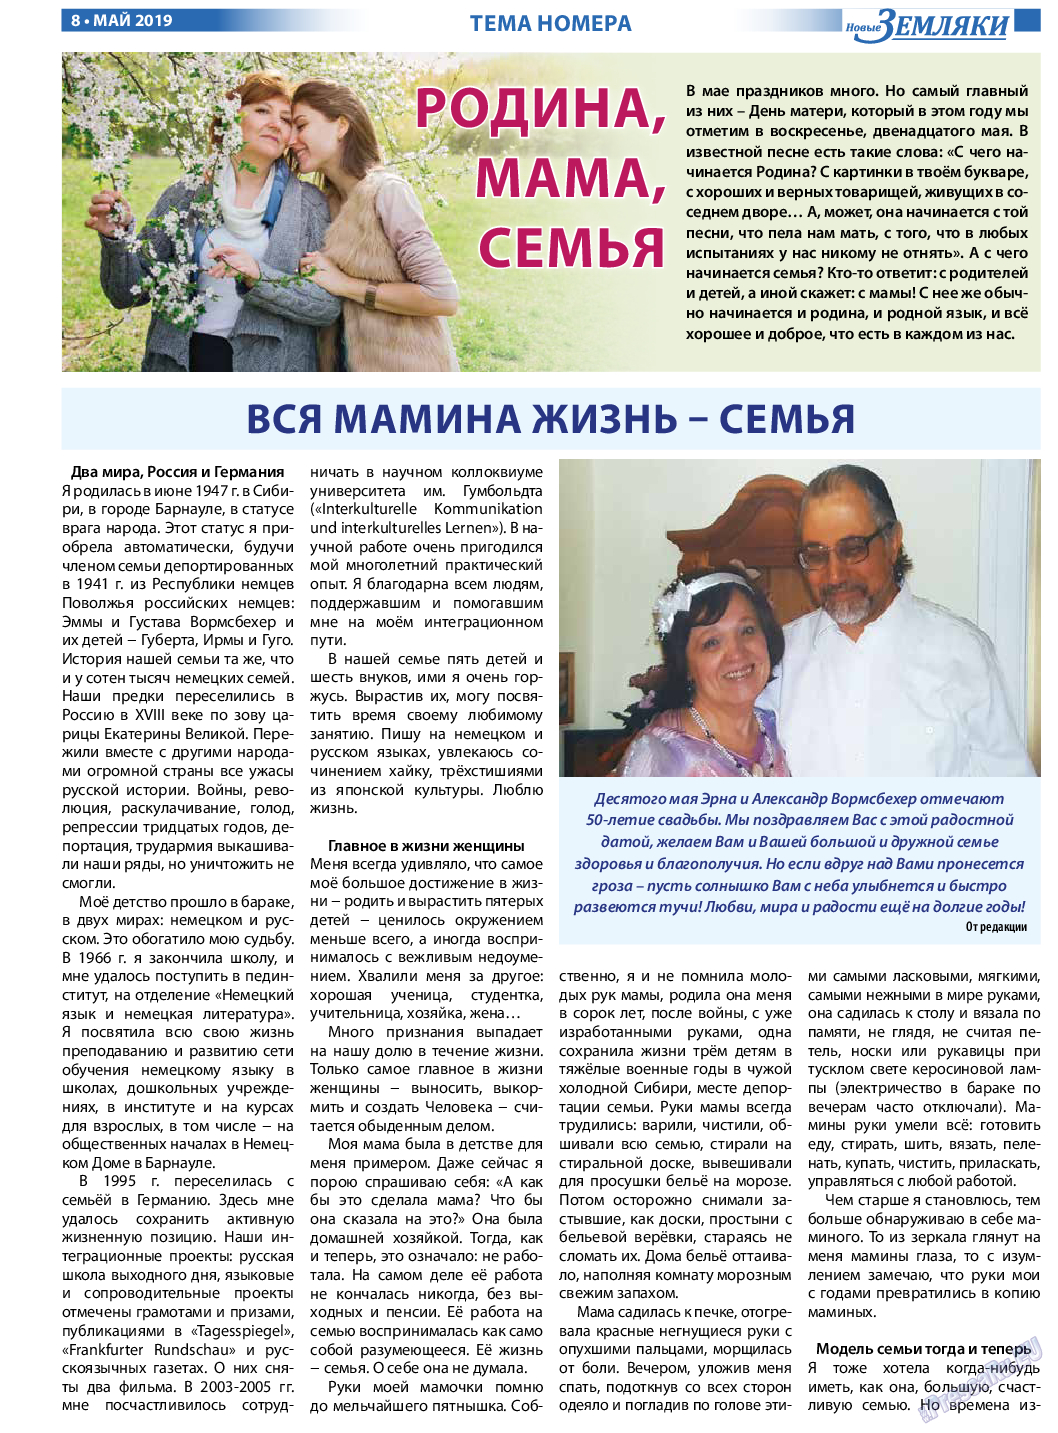 Новые Земляки, газета. 2019 №5 стр.8